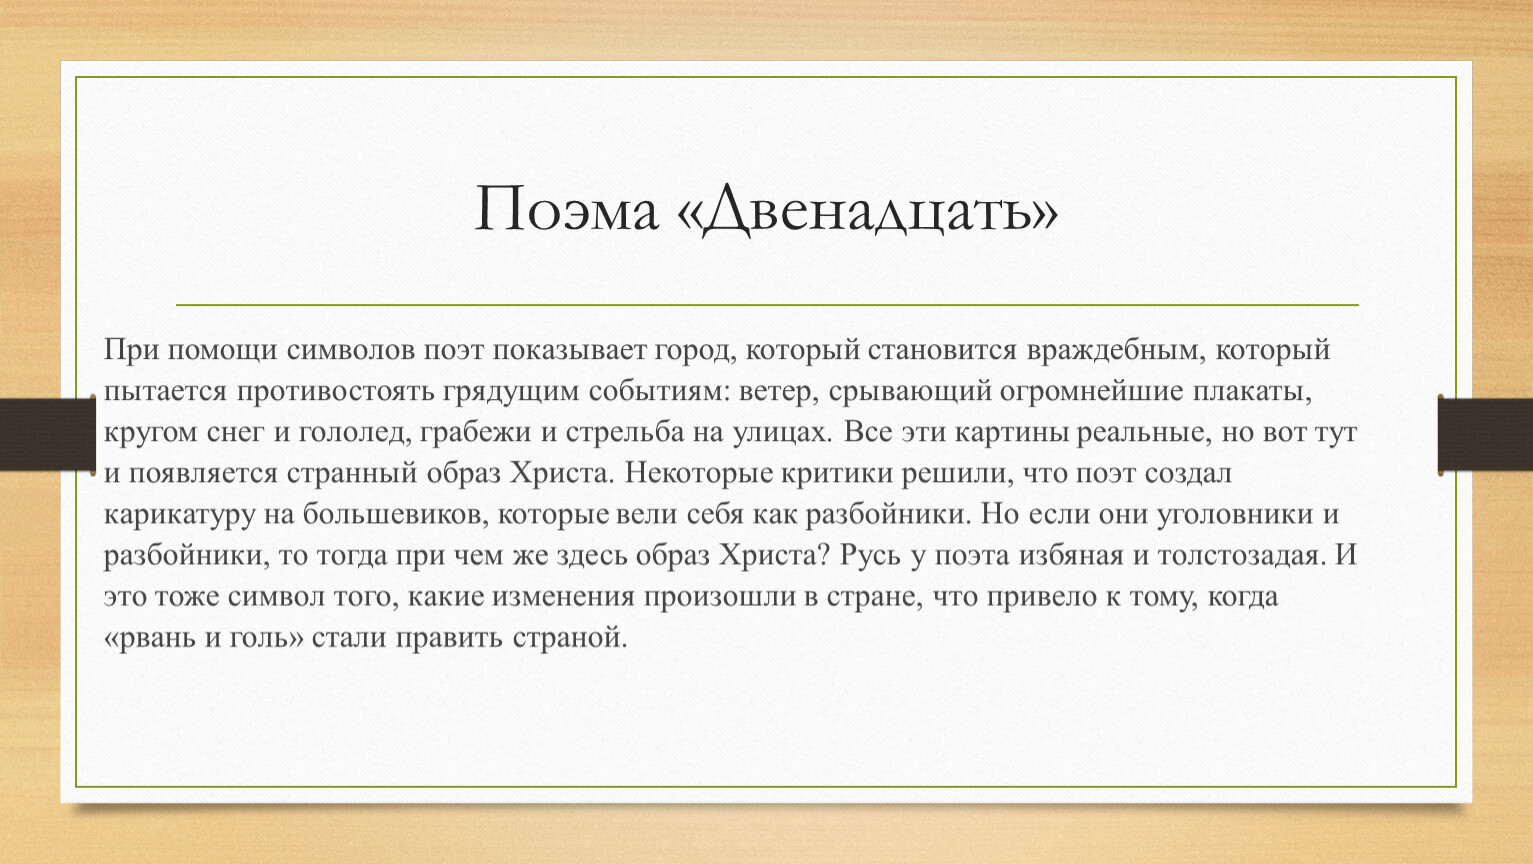 примеры измены в русской литературе фото 27